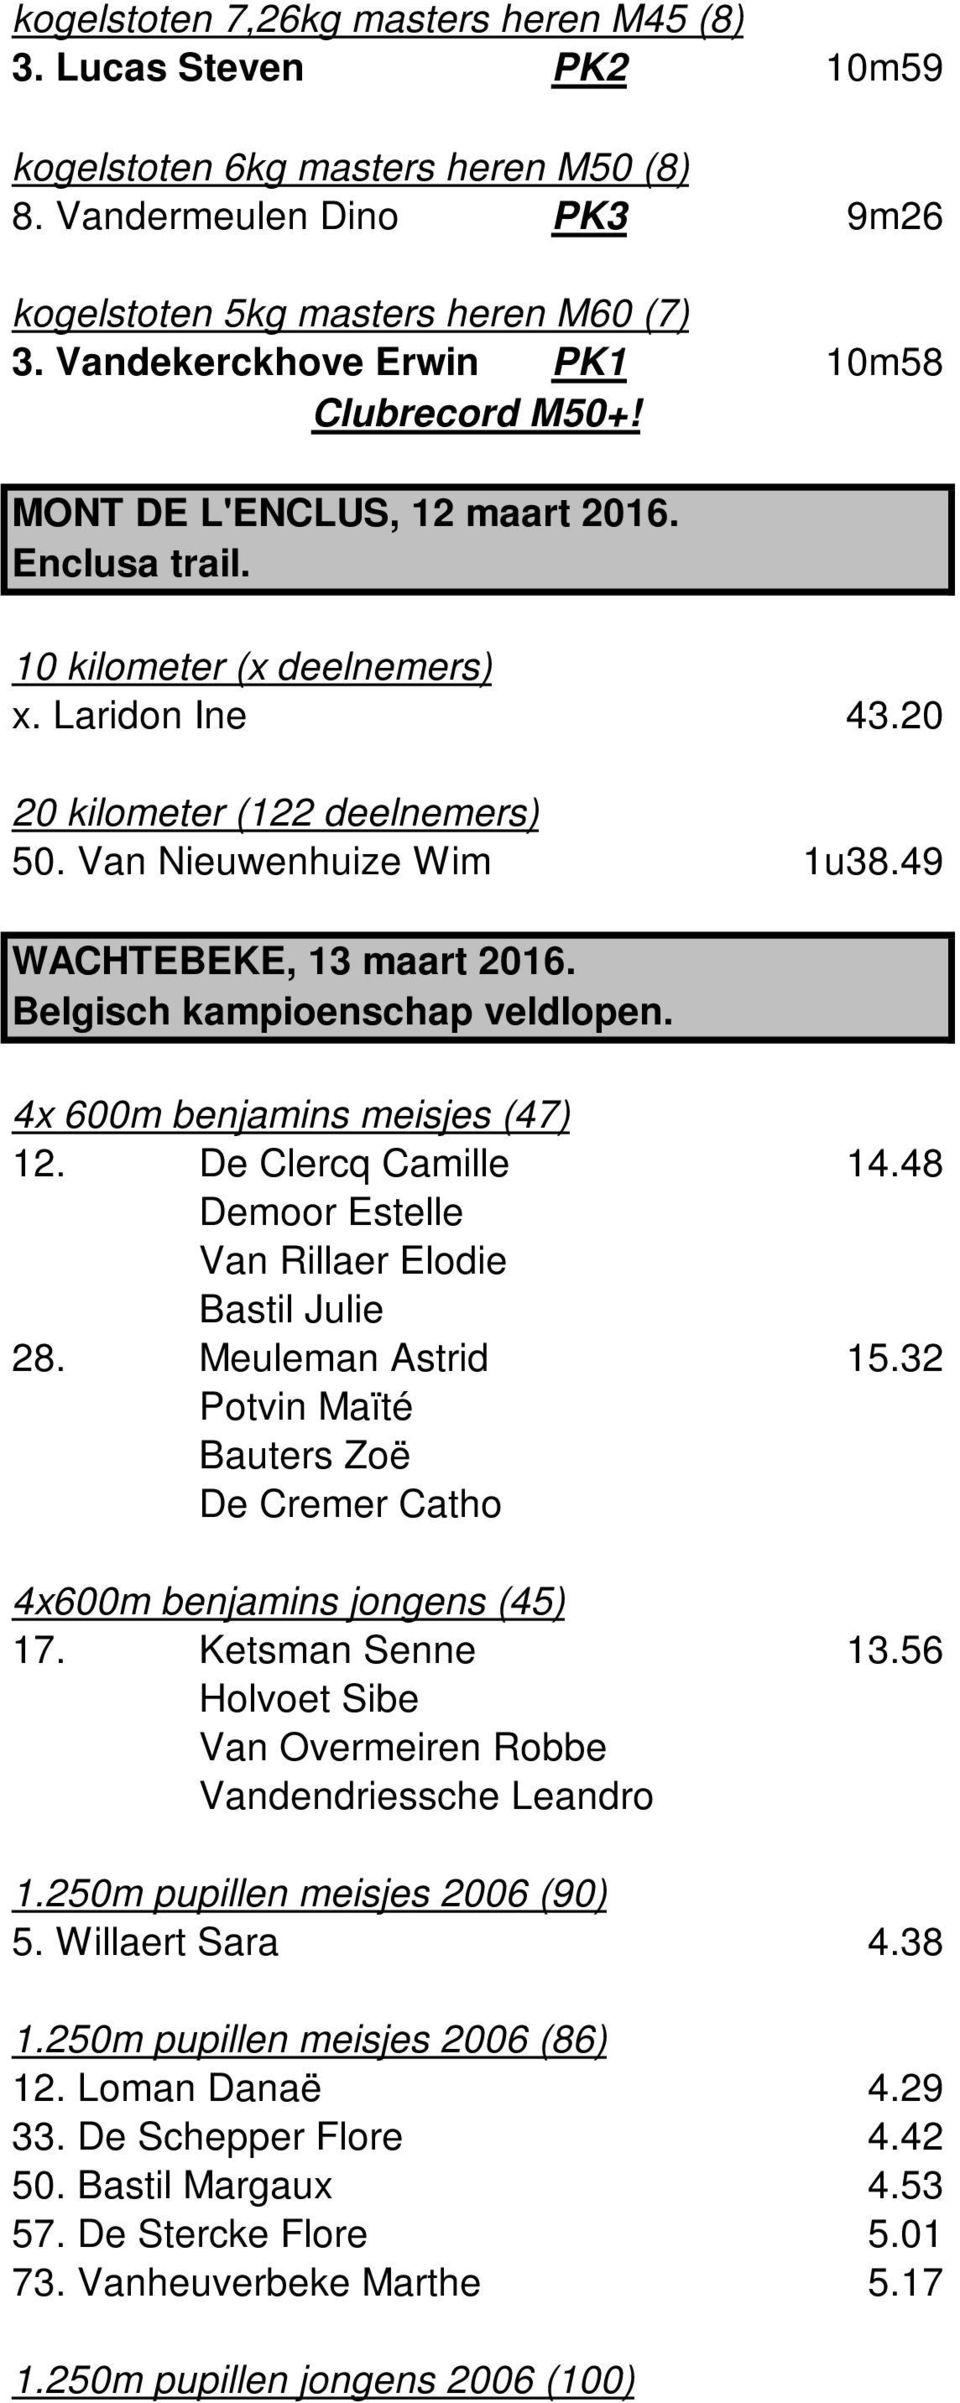 Van Nieuwenhuize Wim 1u38.49 WACHTEBEKE, 13 maart 2016. Belgisch kampioenschap veldlopen. 4x 600m benjamins meisjes (47) 12. De Clercq Camille 14.48 Demoor Estelle Van Rillaer Elodie Bastil Julie 28.